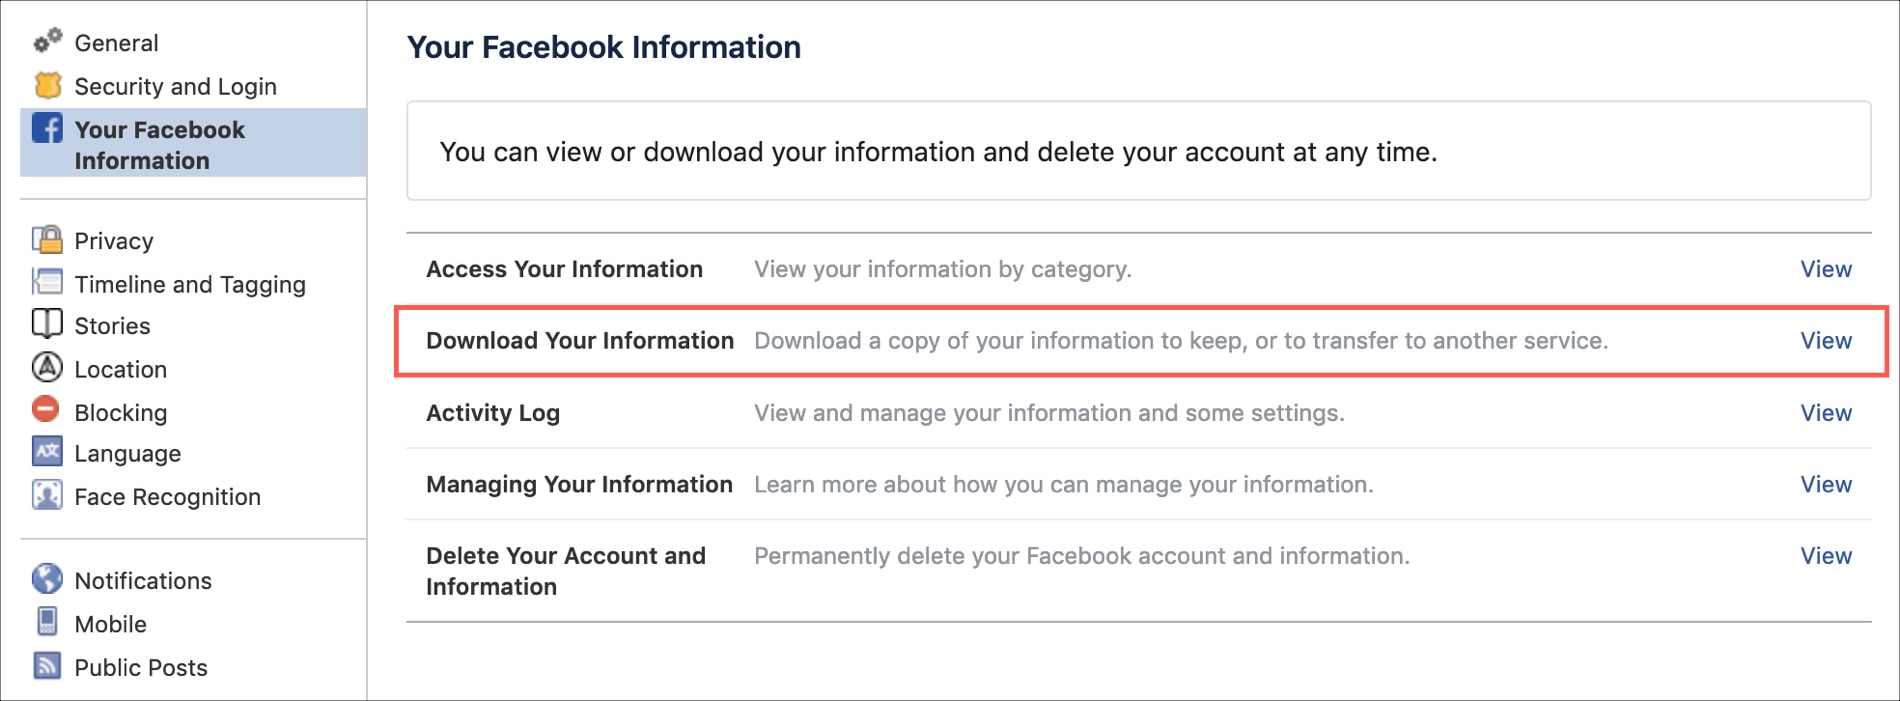 دانلود اطلاعات برای حذف اکانت فیسبوک